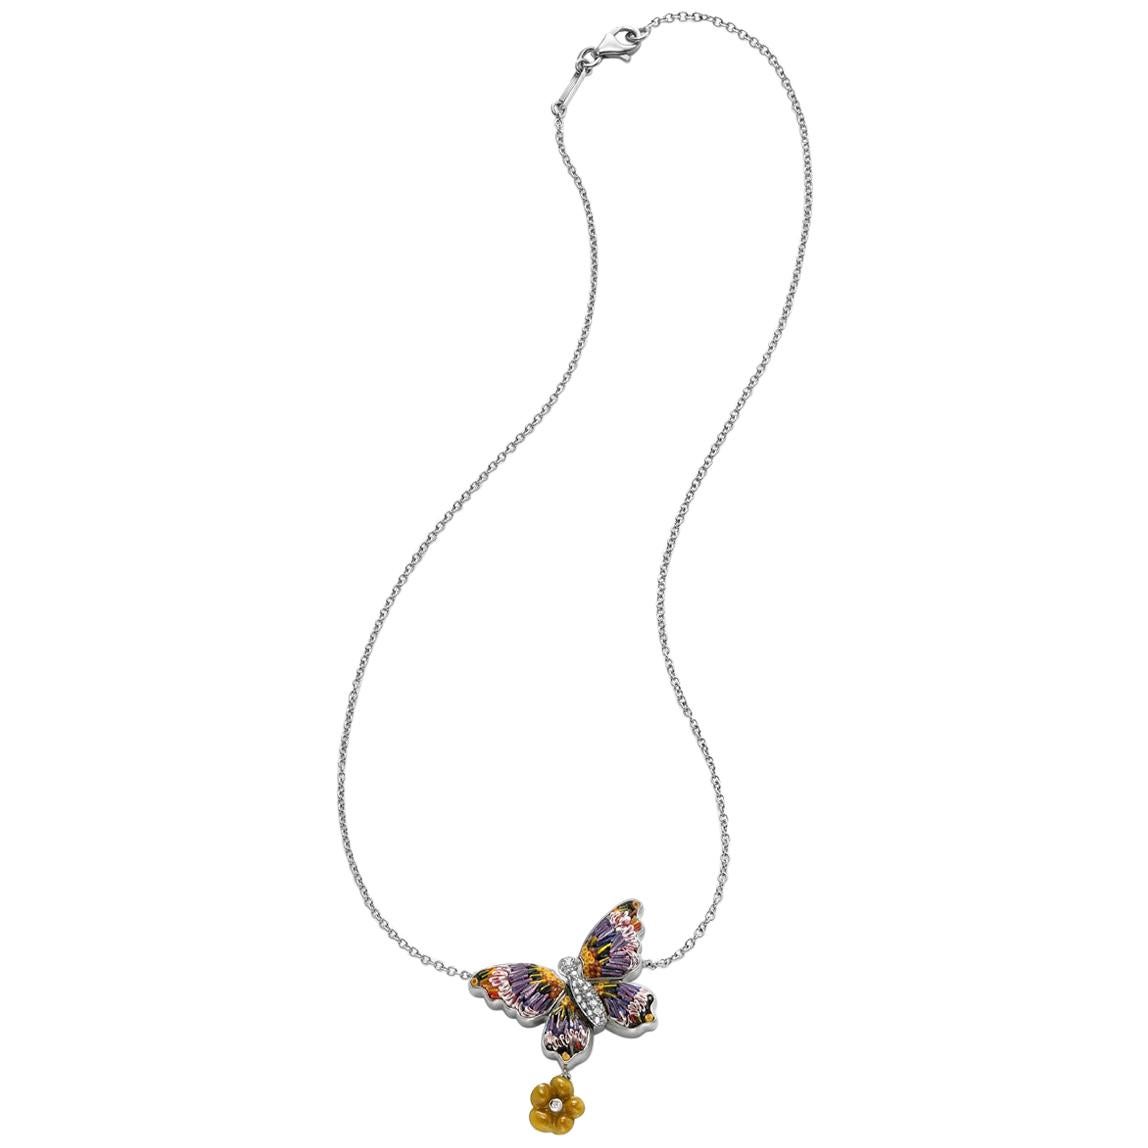 Halskette aus Weißgold mit weißen Diamanten und Emaille, von Hand verziert mit Mikro-Mosaik